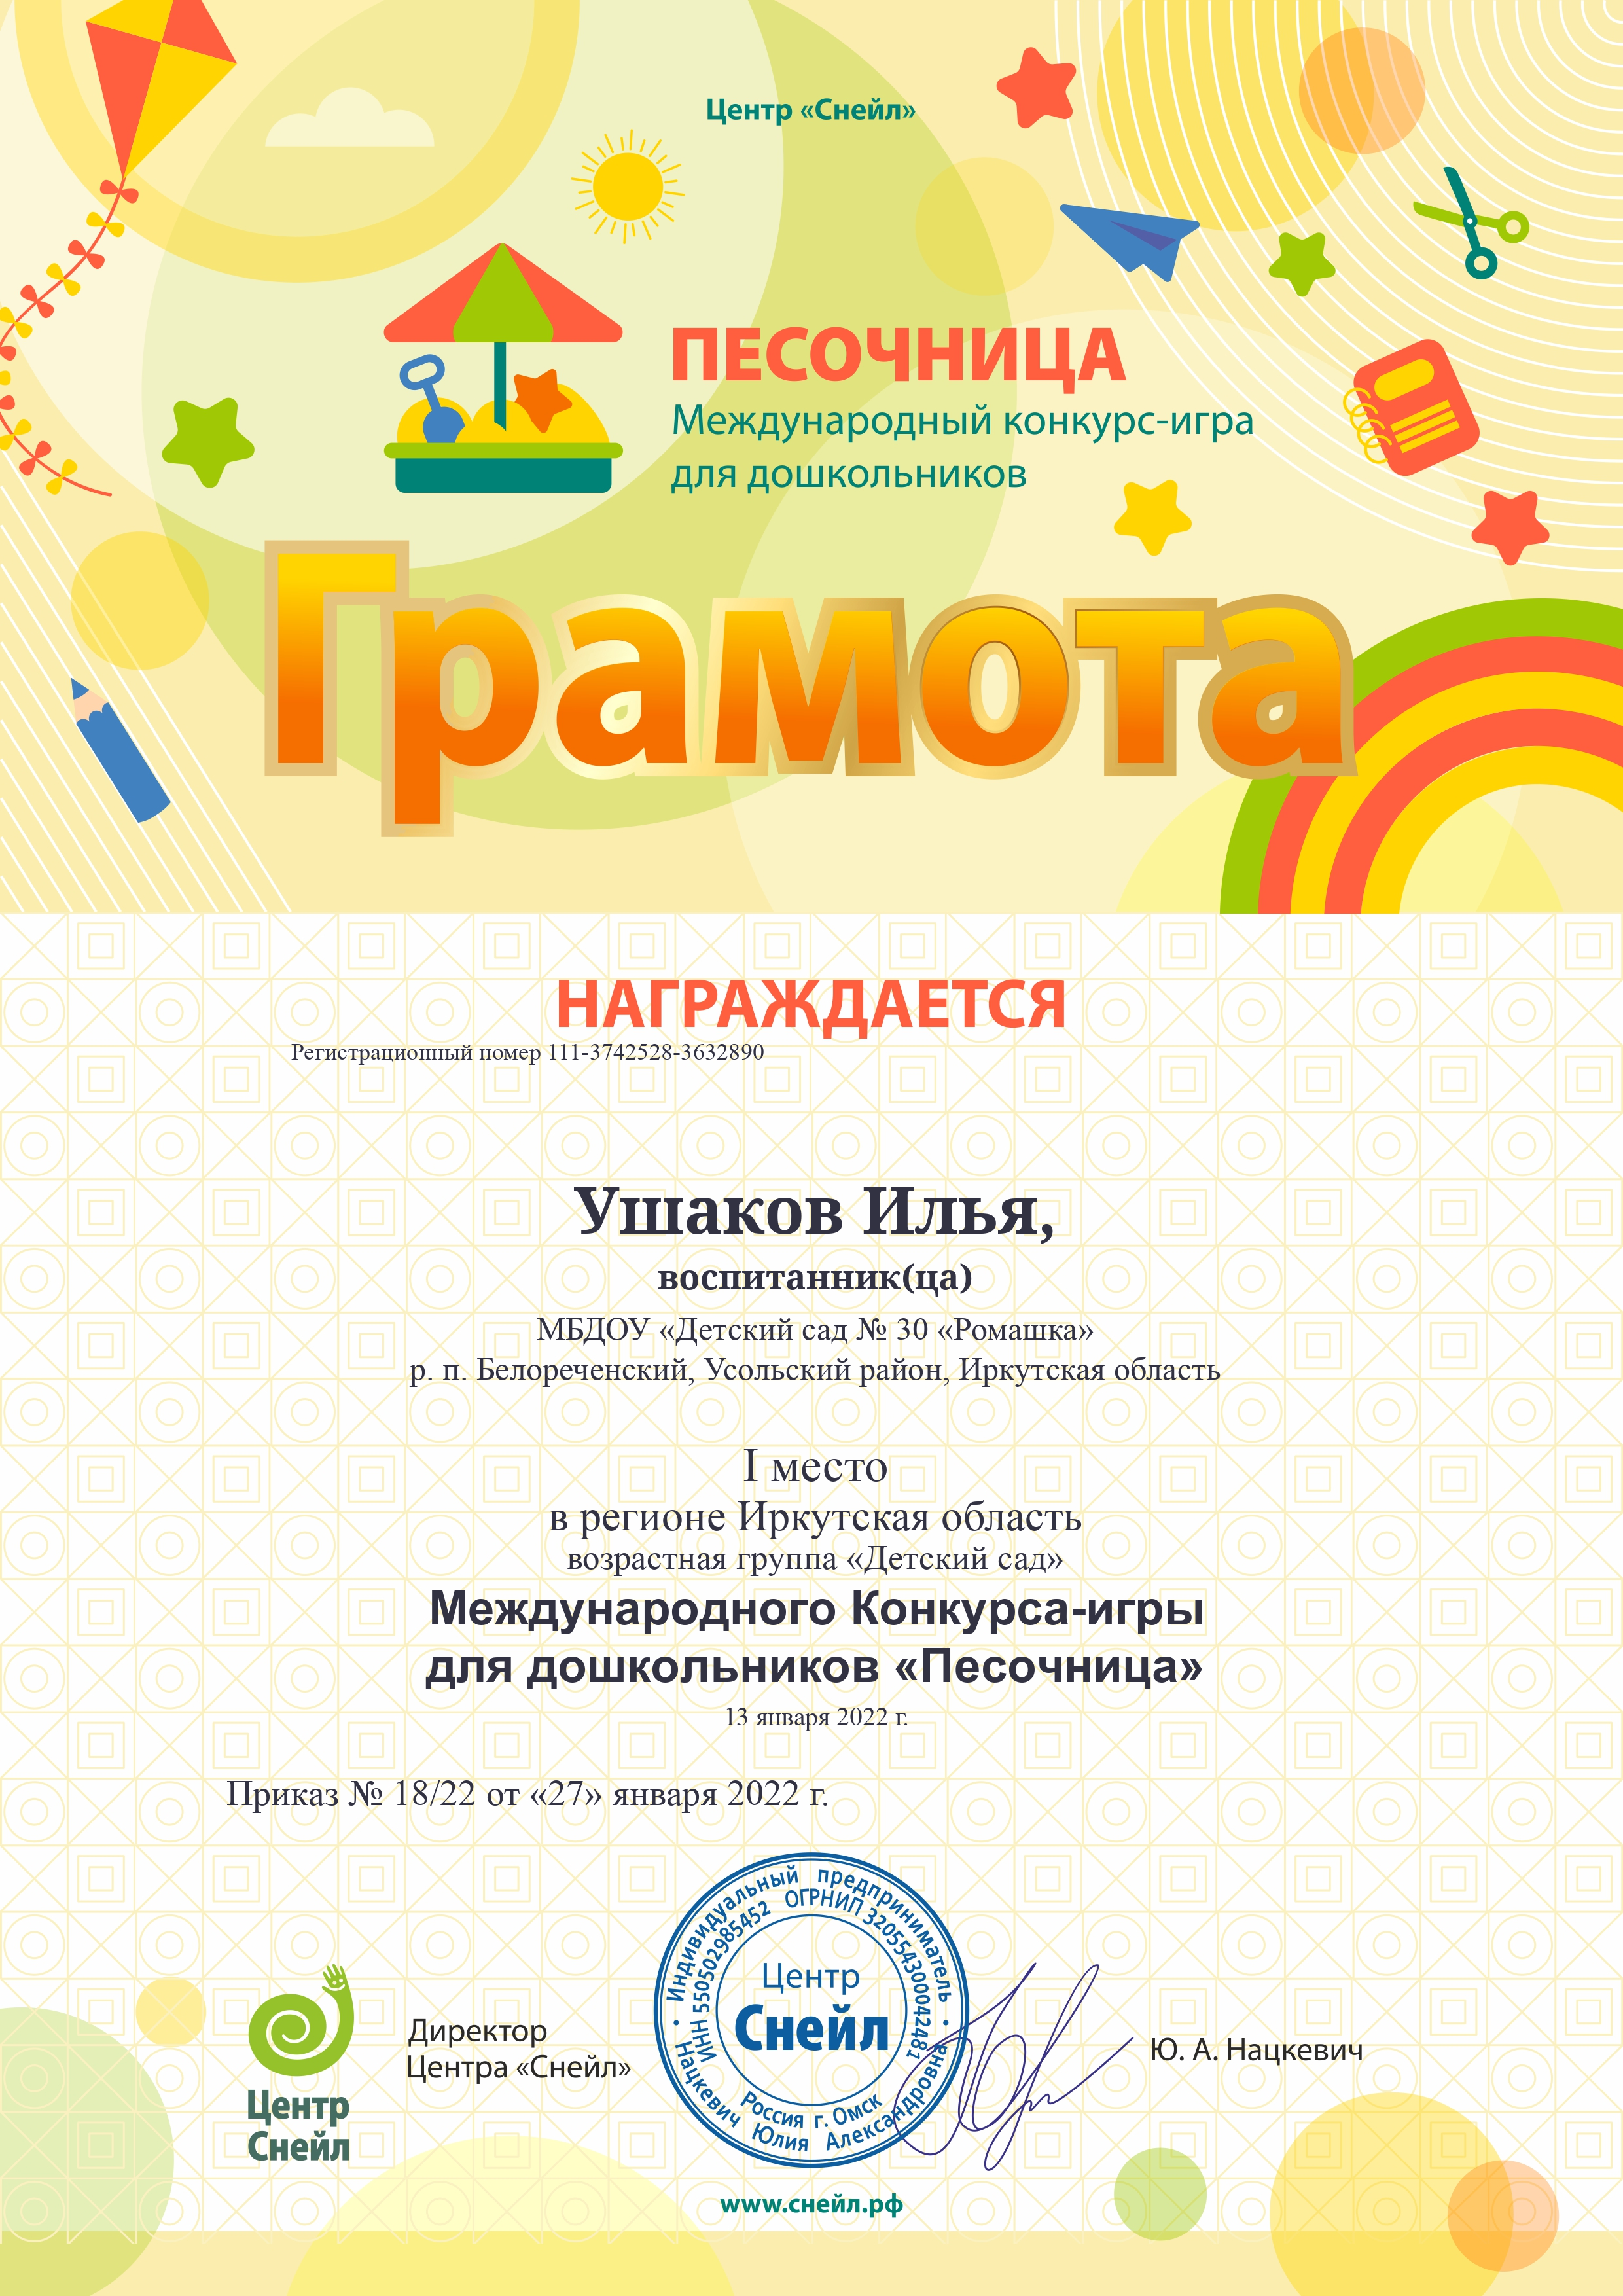 chapter member win sub Ushakov Ilya 1